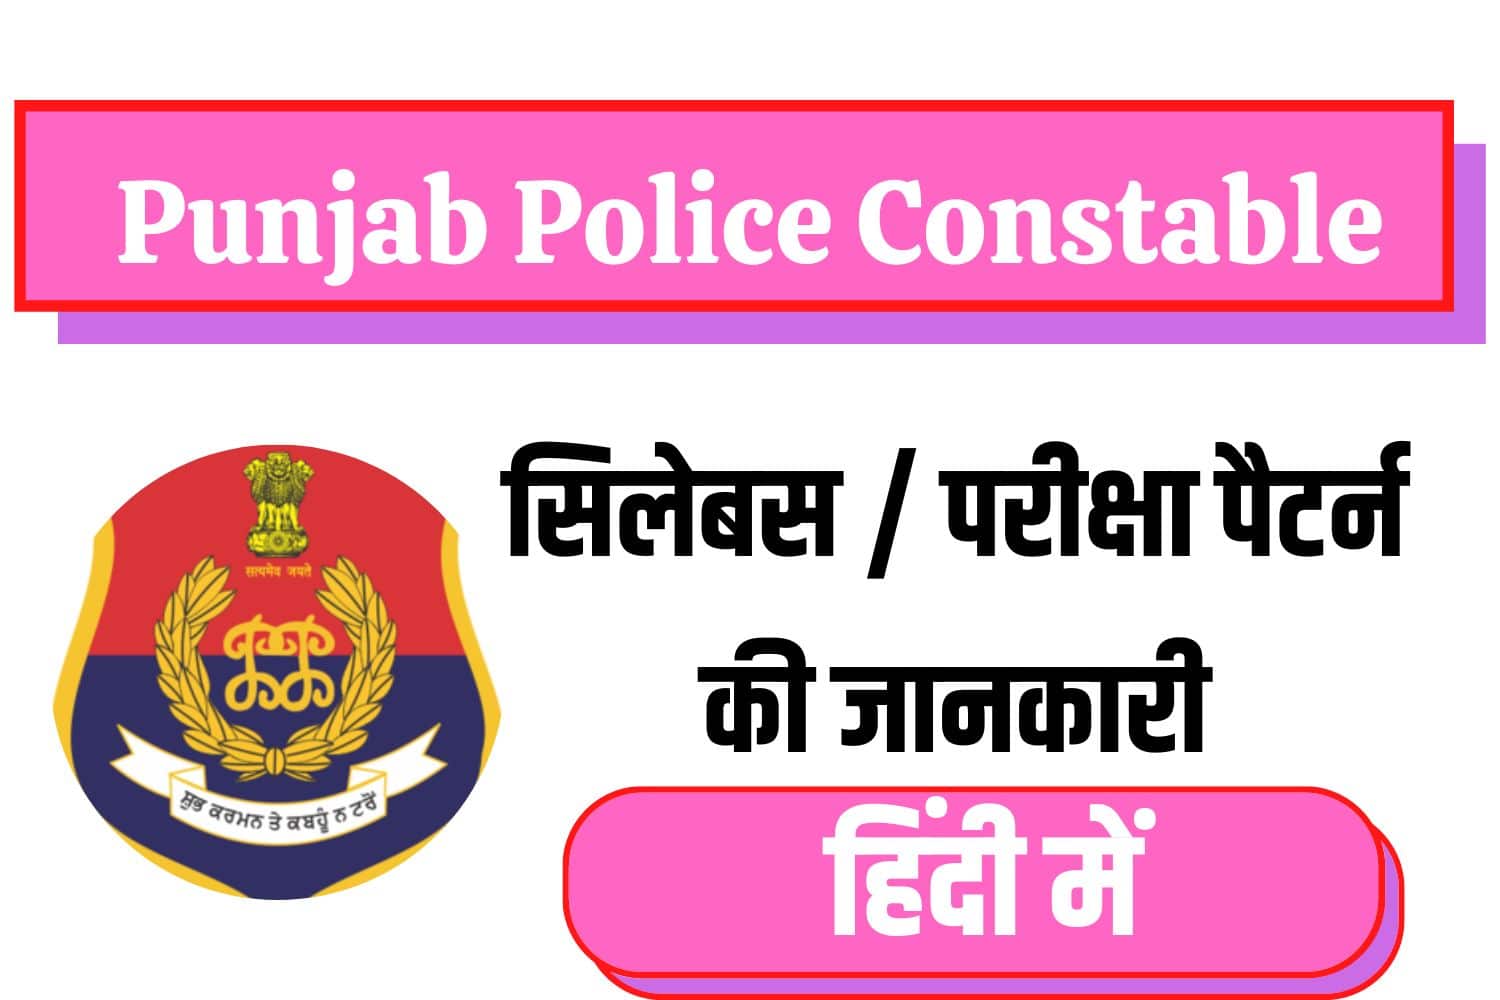 Punjab Police Head Constable Syllabus In Hindi | पंजाब पुलिस सिलेबस इन हिंदी